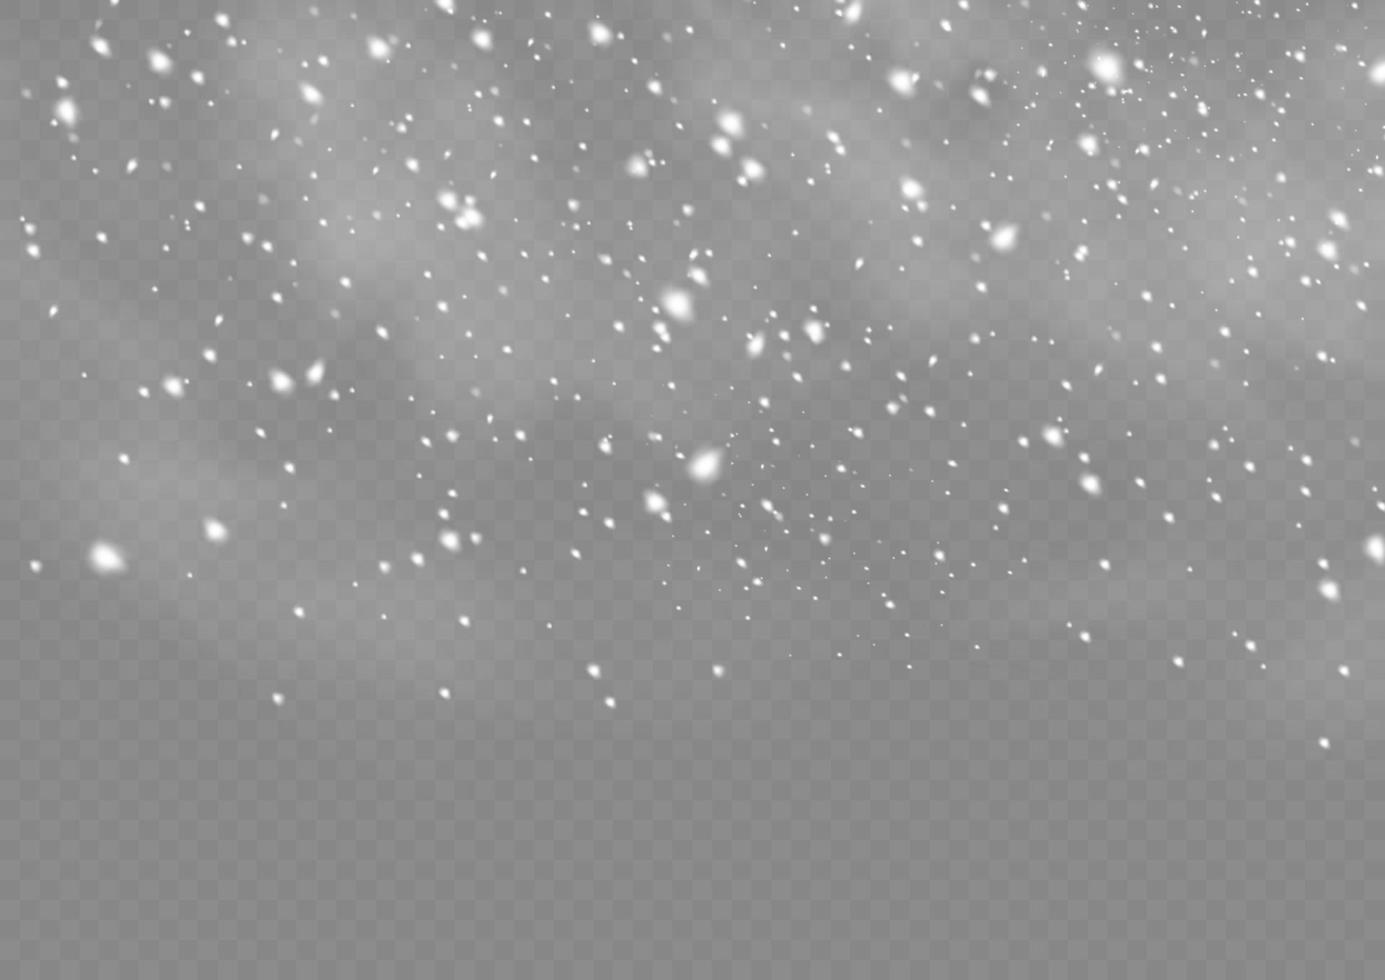 nieve y viento. fuertes nevadas vectoriales, copos de nieve en varias formas y formas. muchos elementos de copos fríos blancos. los copos de nieve blancos vuelan en el aire. fondo de nieve. vector